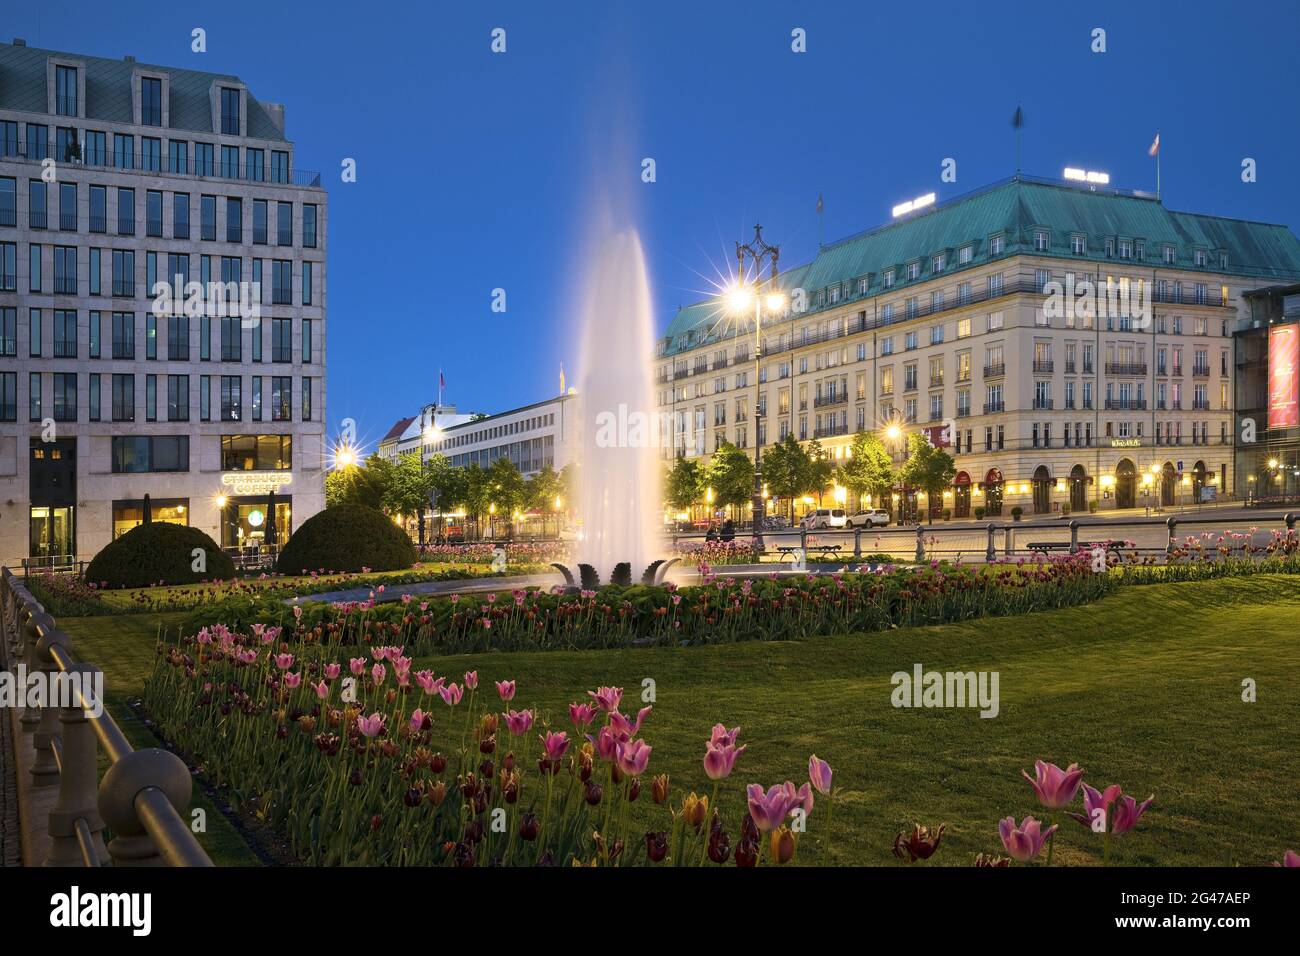 Pariser Platz mit Brunnen und Hotel Adlon Kempinski am Abend, Berlin, Deutschland, Europa Stockfoto